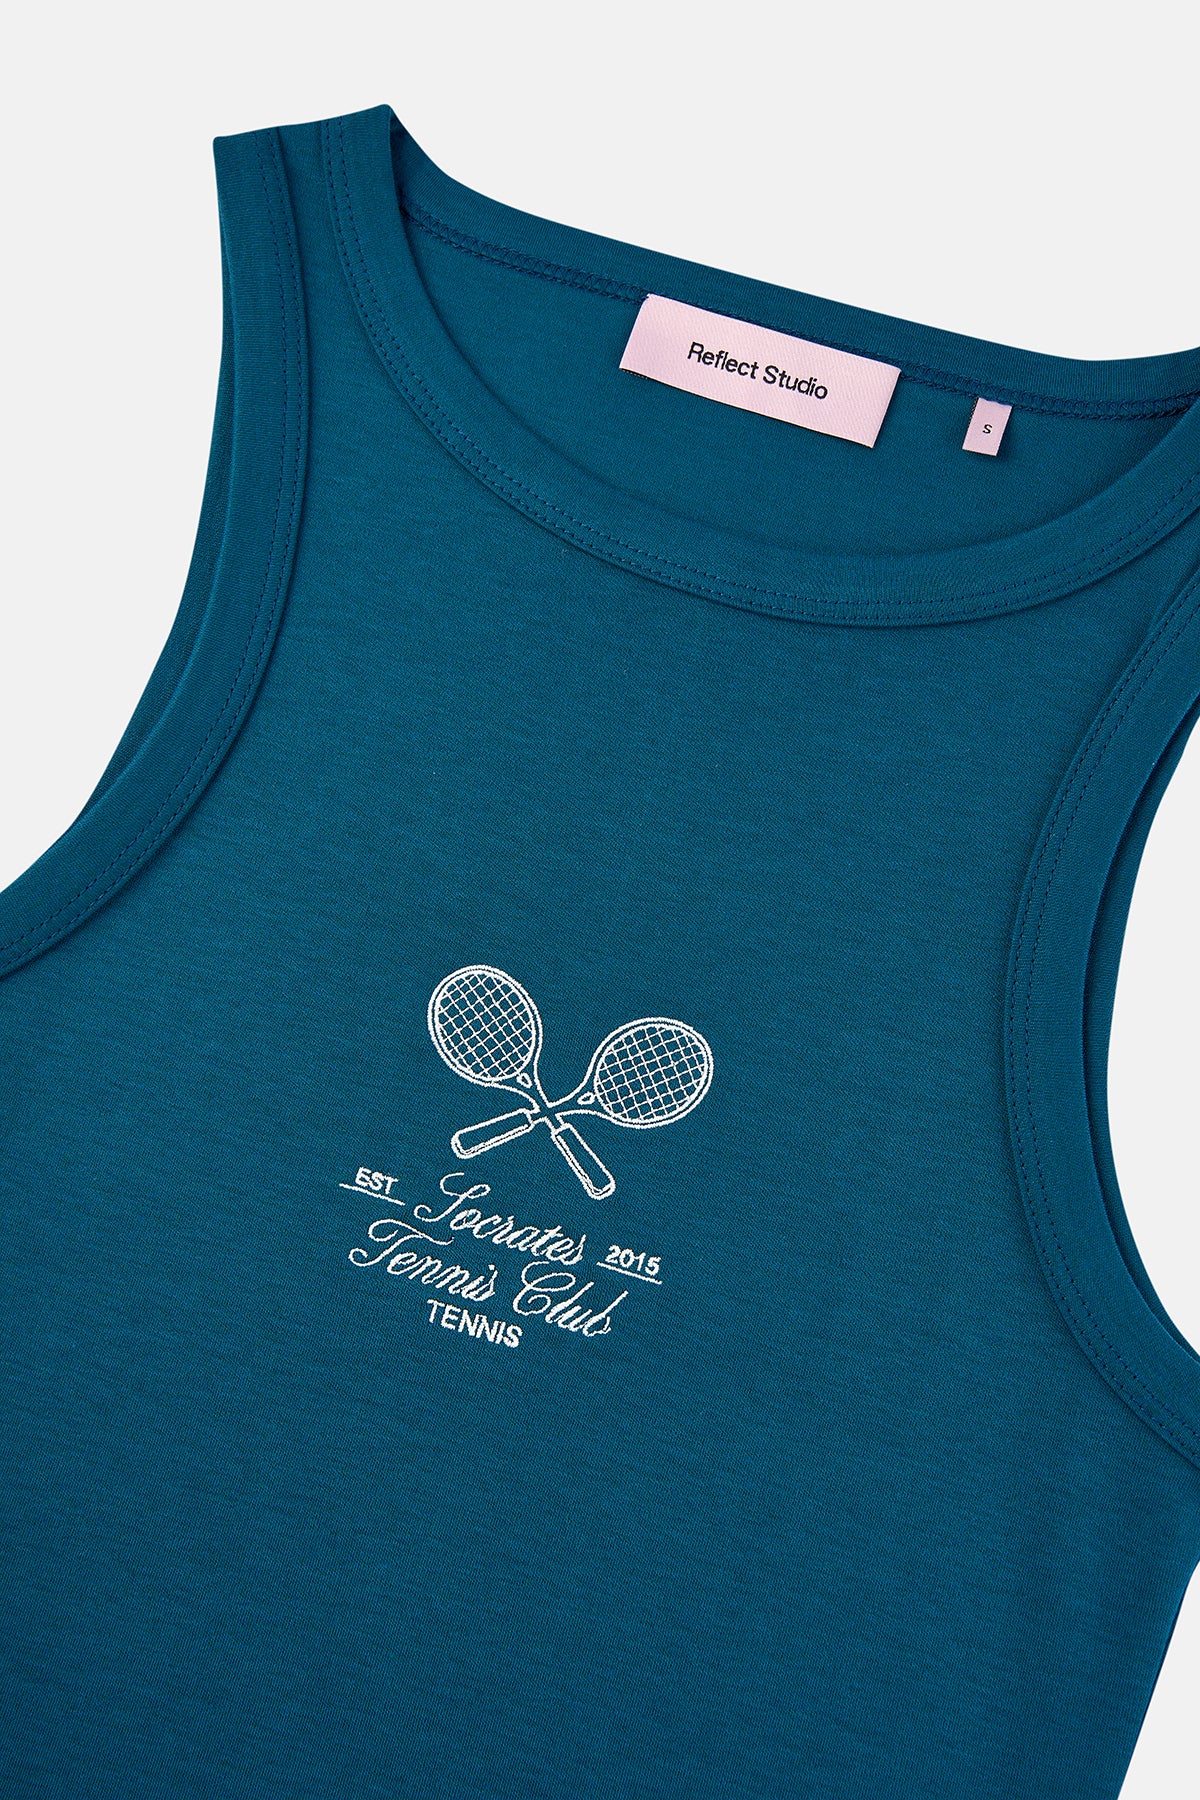 Socrates Tennis Club  Premium Elbise - Mavi